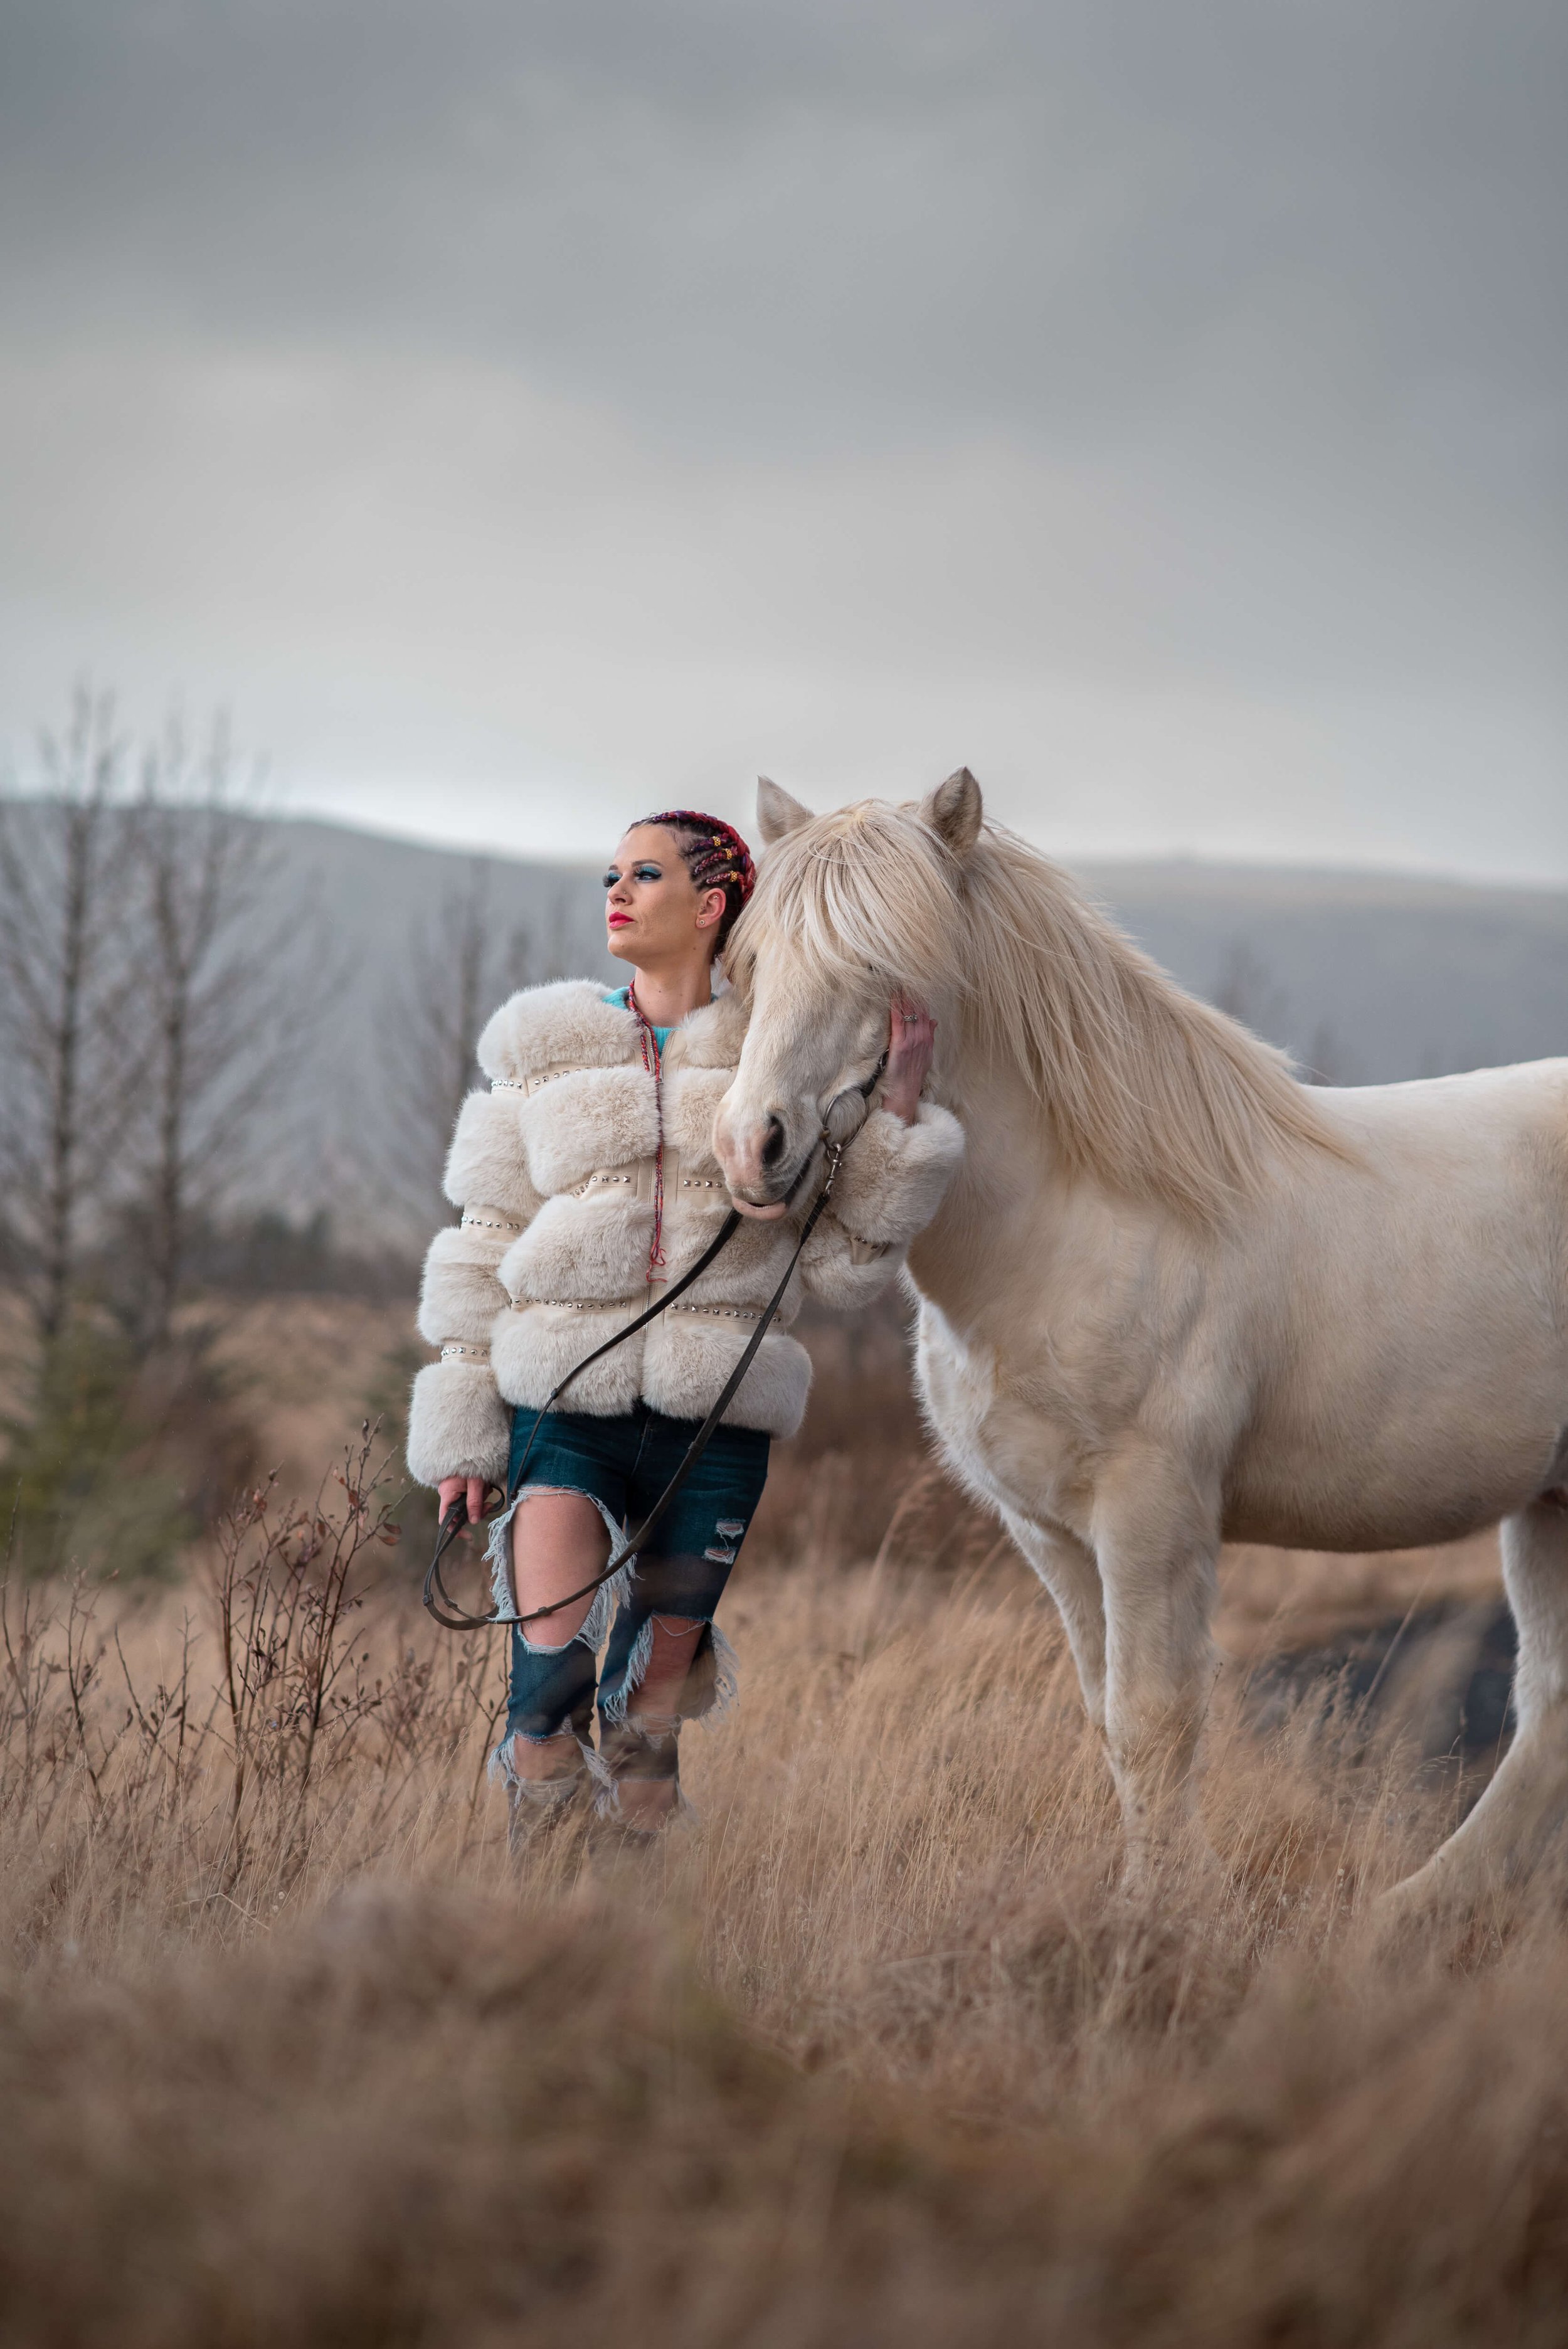 Bella Hadid Shares Horseback Riding Post